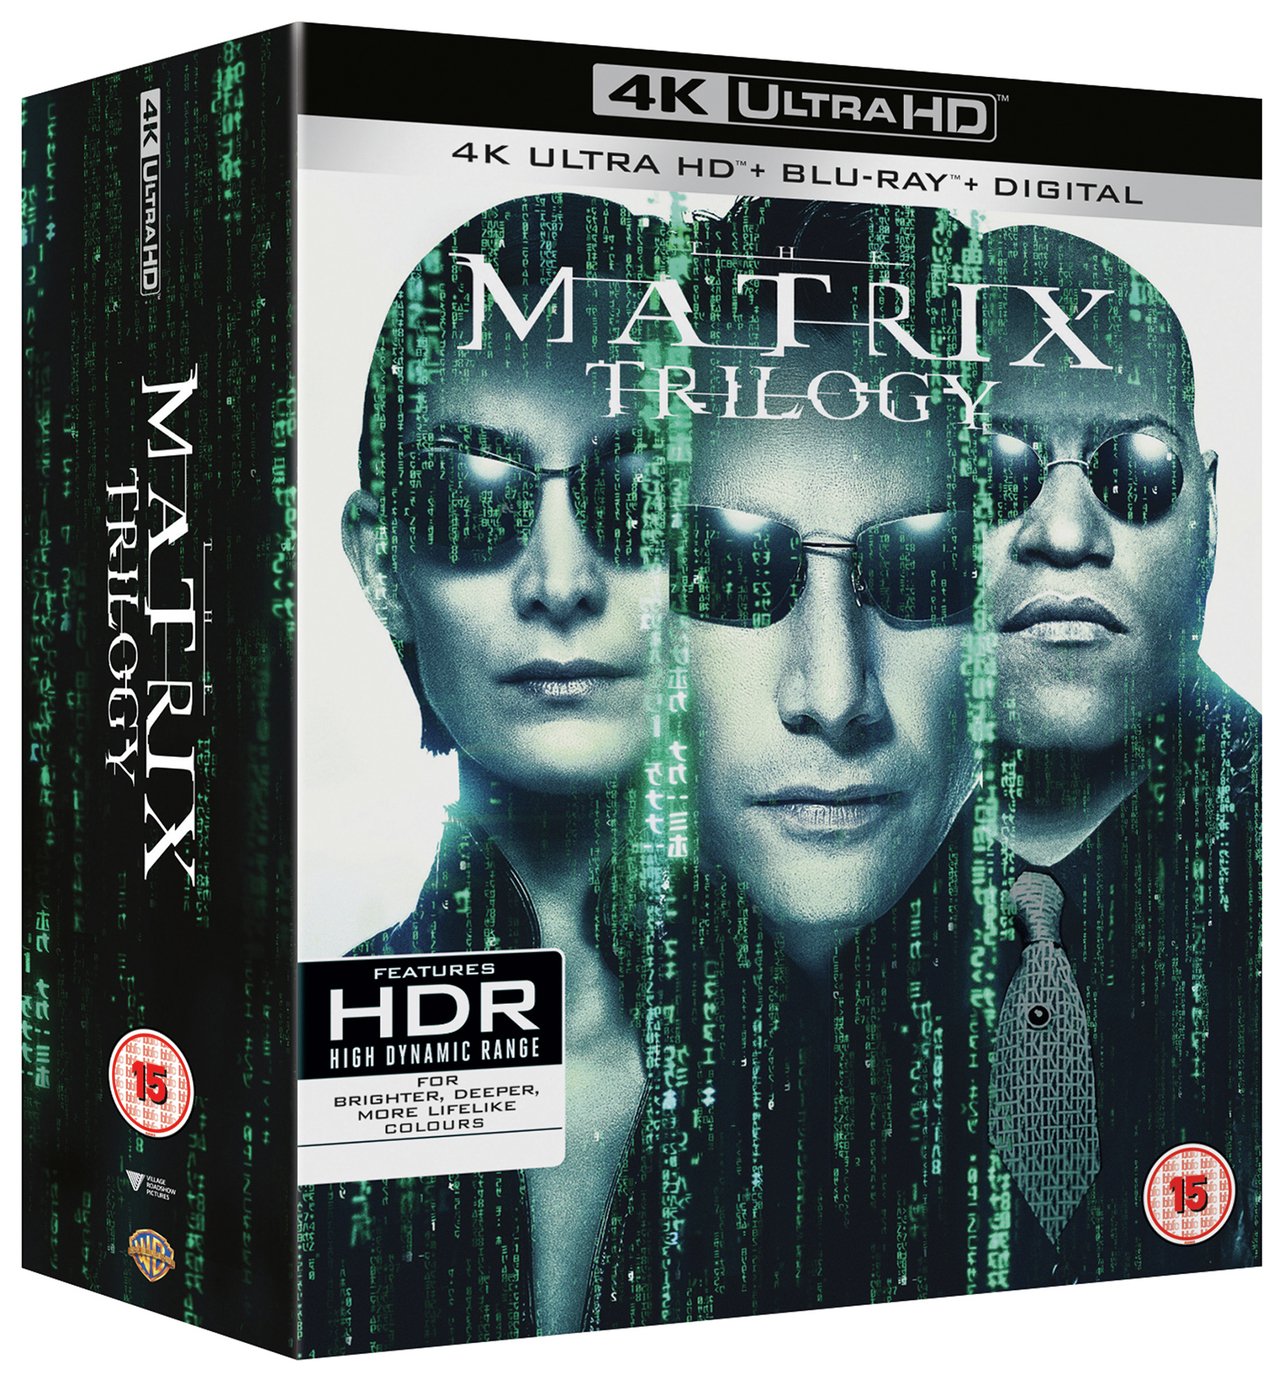 The Matrix Trilogy 4K UHD Blu-Ray Box Set Review